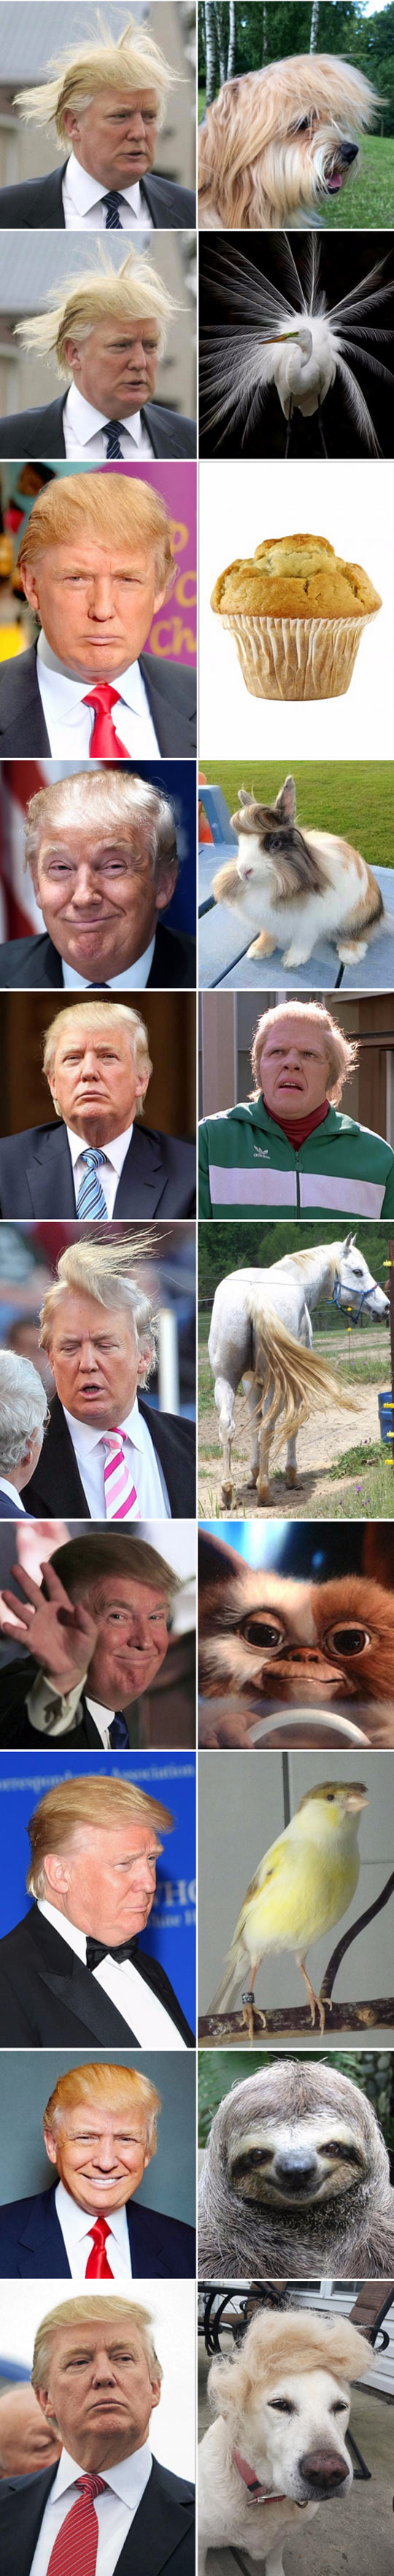 funny-Donald-Trump-hair-cat-look-alike